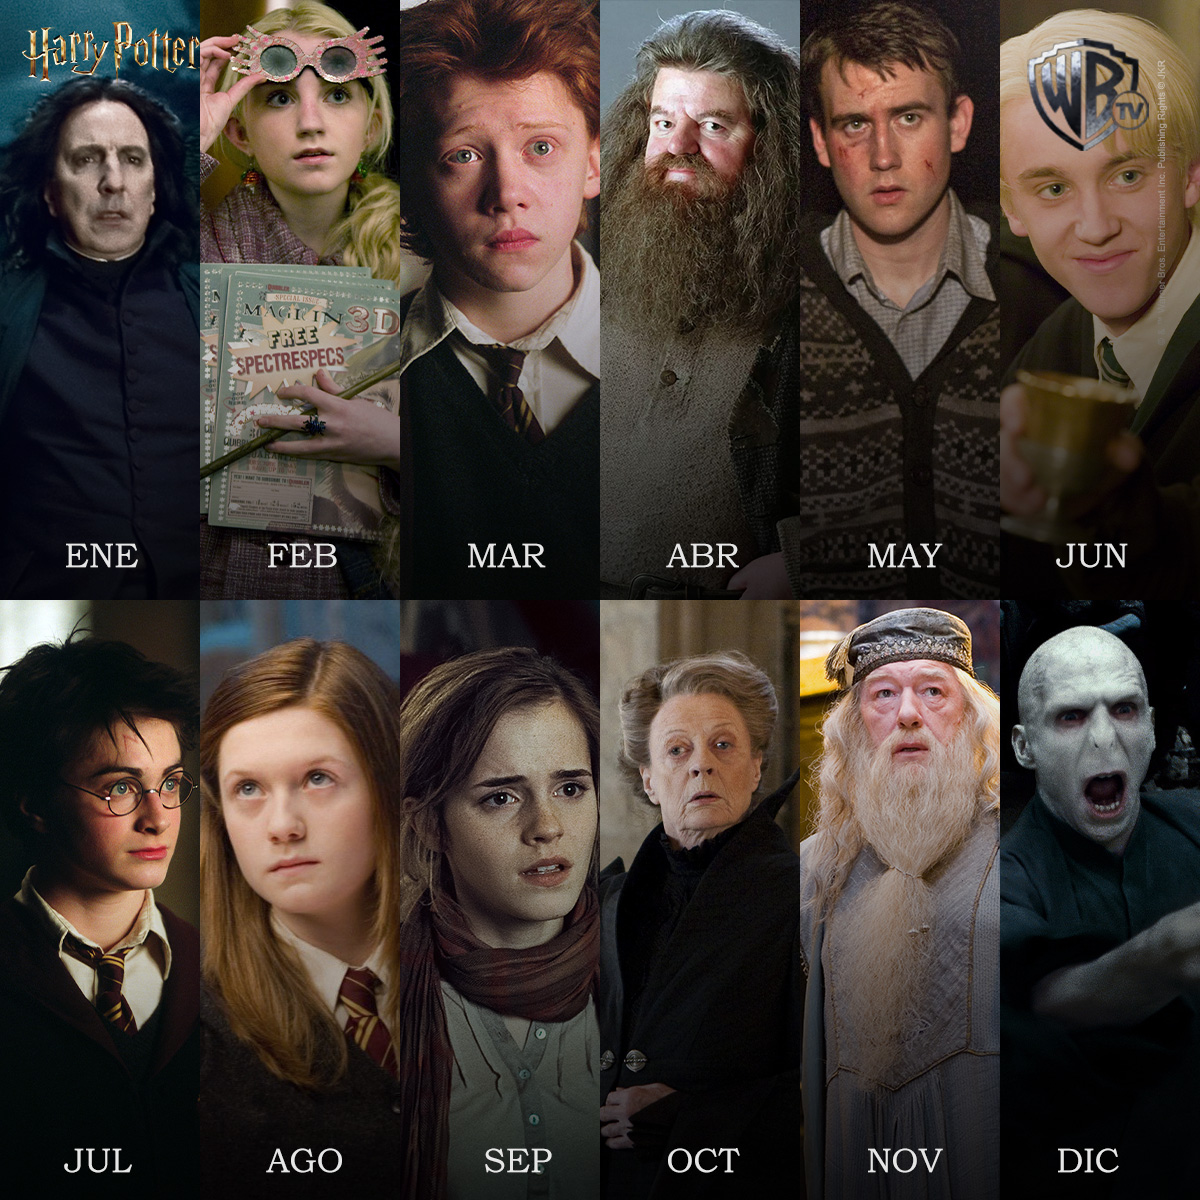 Tu mes de nacimiento representa tu personaje en #HarryPotter 🔮 ¿Cuál ha sido el elegido? ​ El 18 de mayo los esperamos en nuestra pantalla con una super maratón de #HarryPotter llena de magia y hechizos ✨